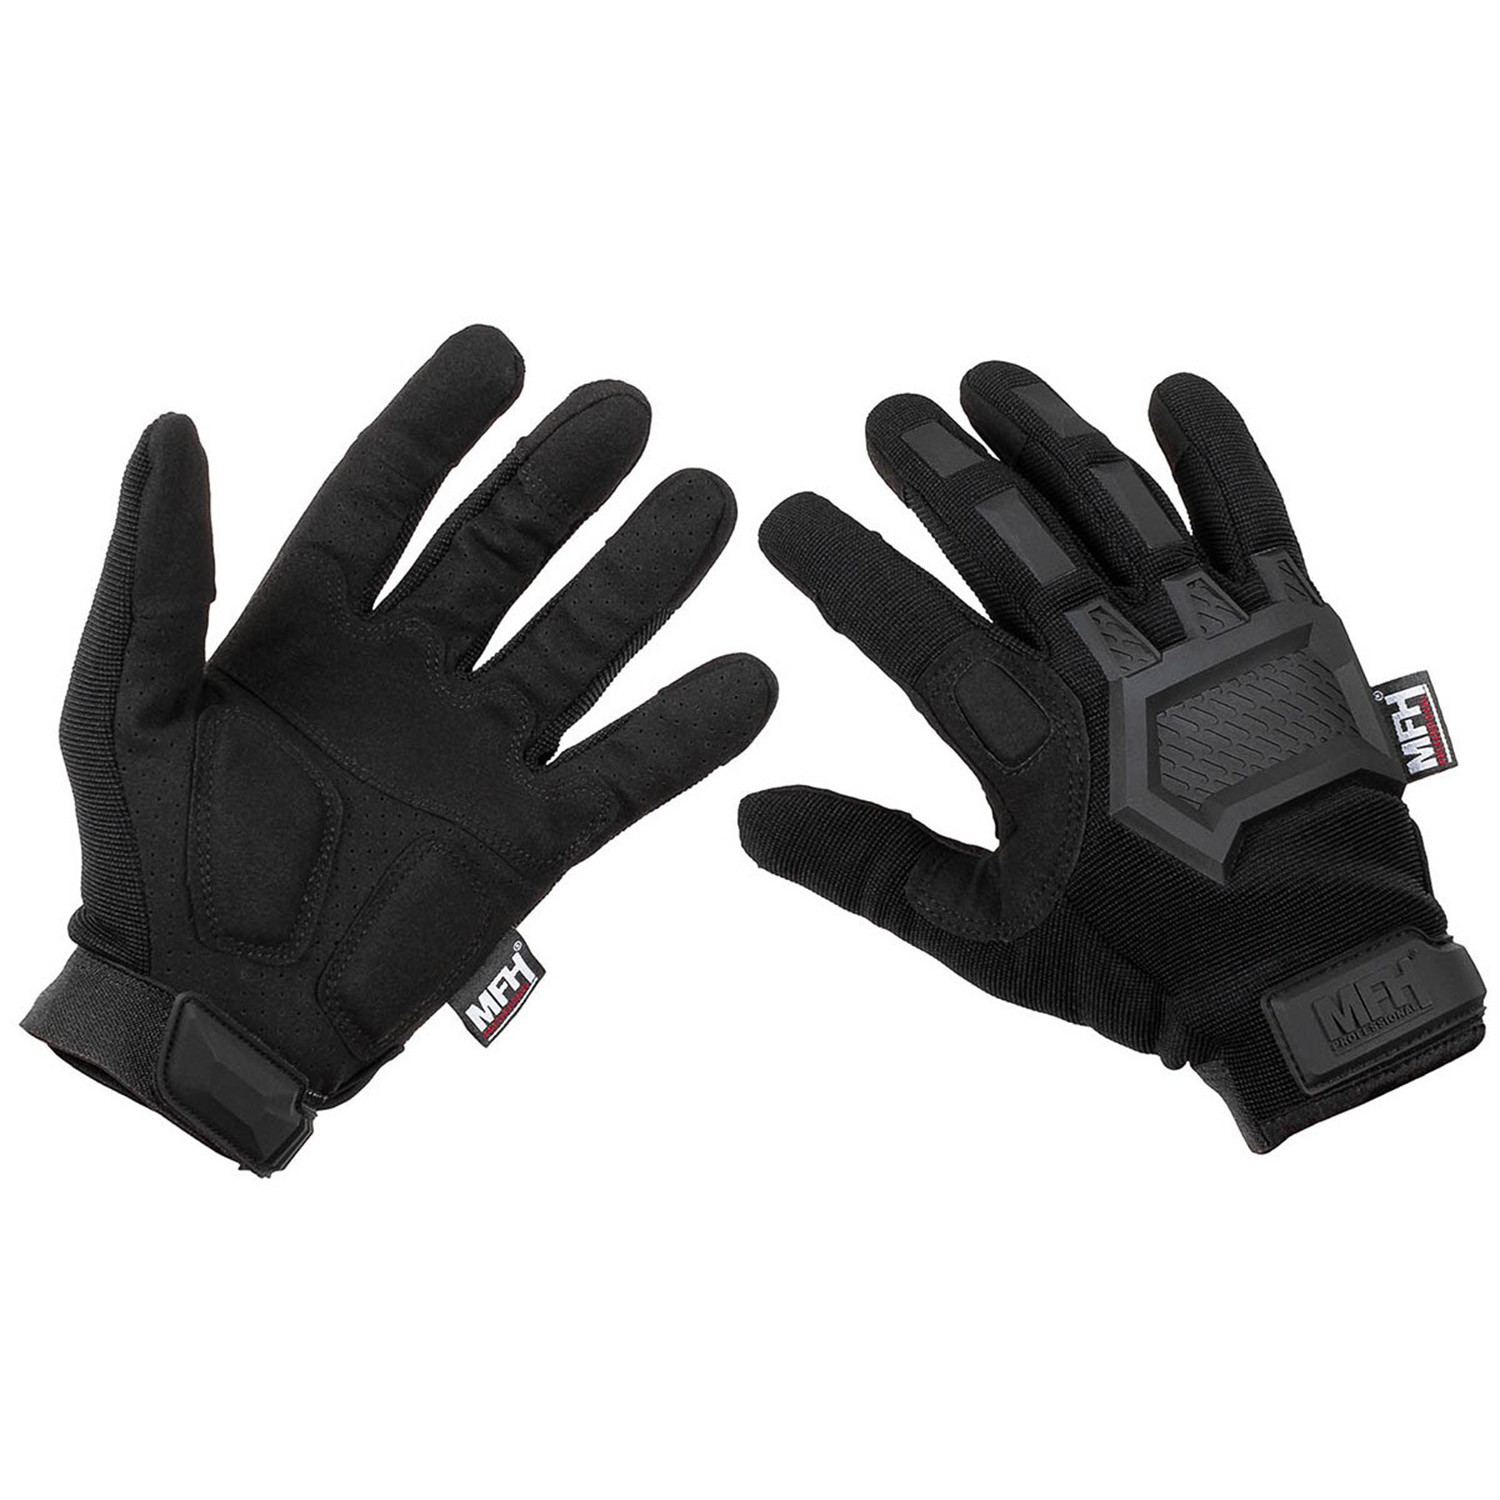 Taktische Handschuhe in Schwarz, Größe XXL (11)